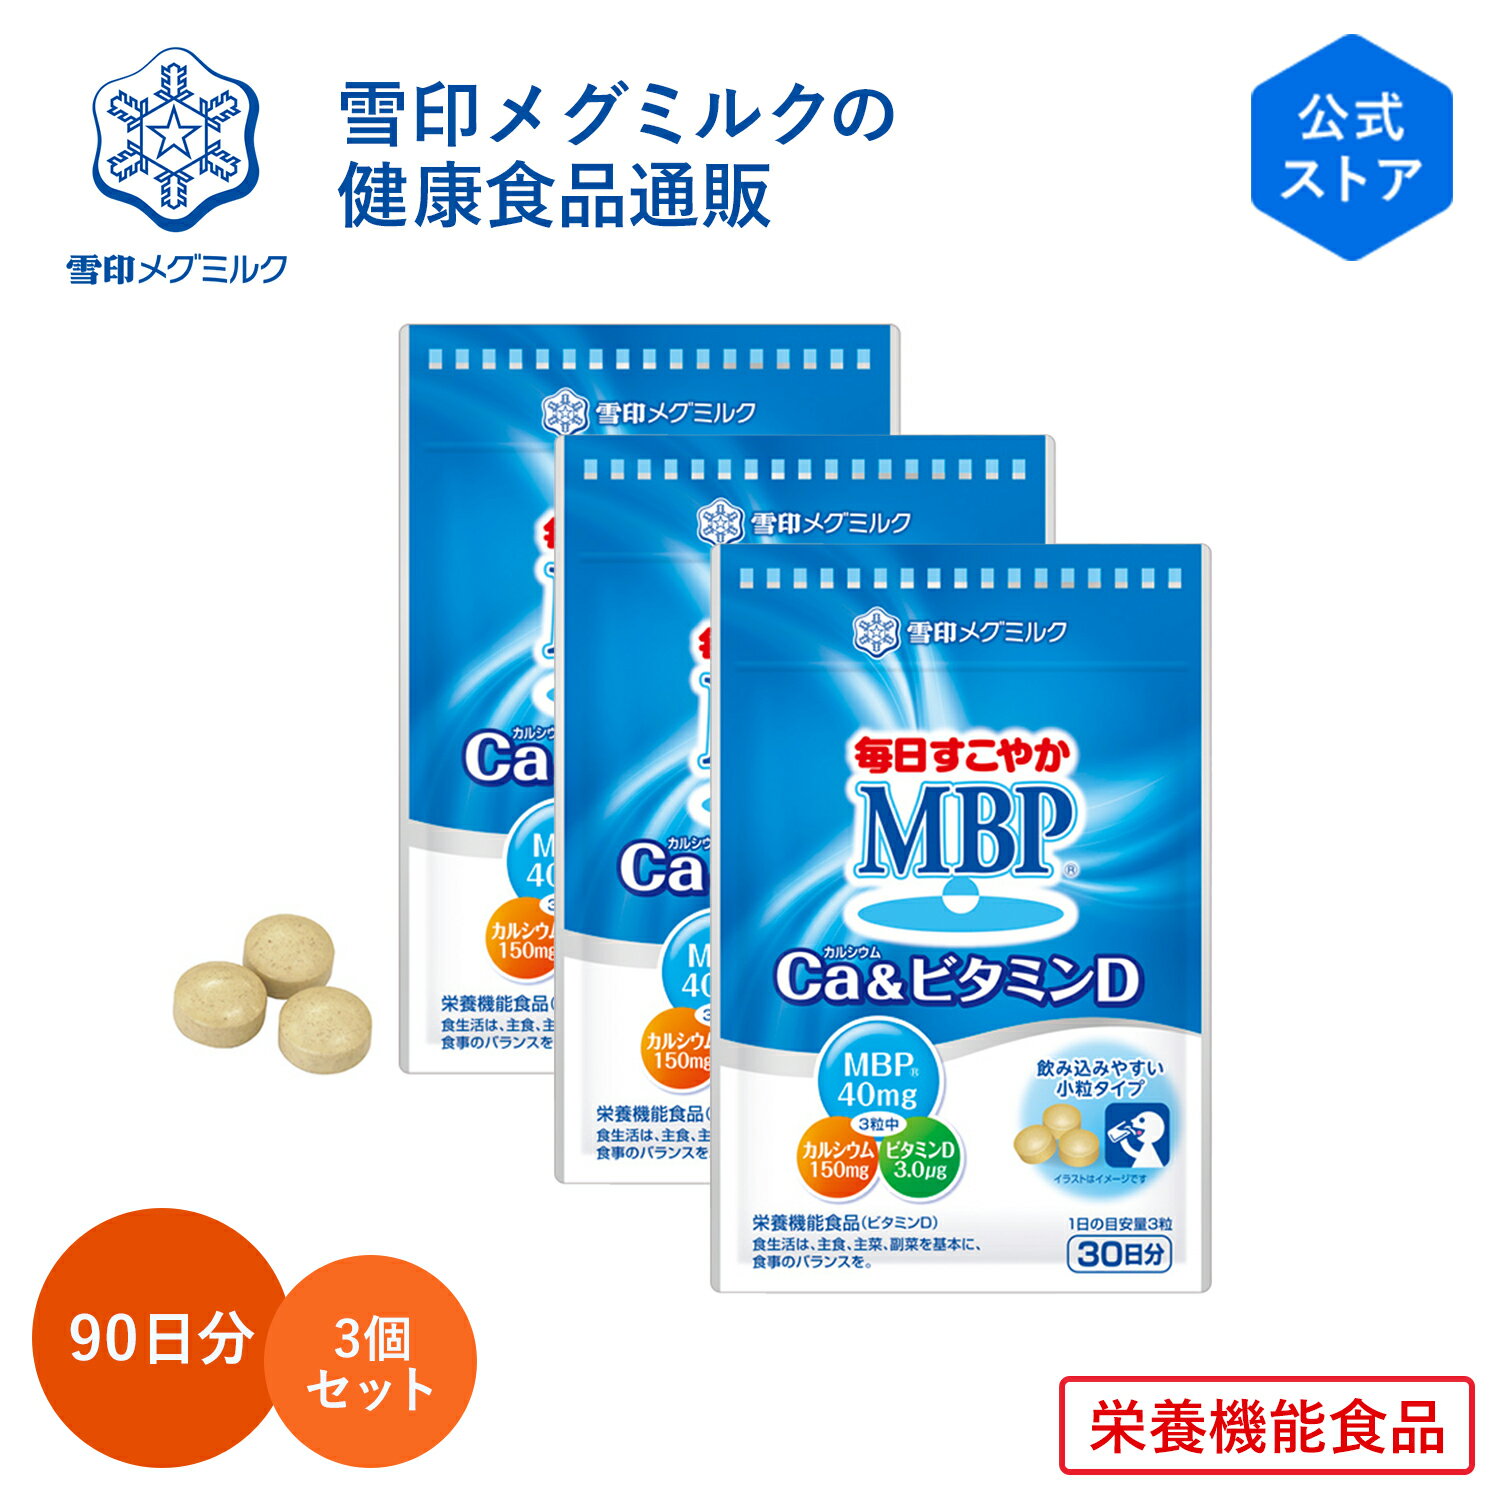 【公式】毎日すこやか MBP(R) Ca & ビタミンD 90粒 30日分 3個セット 雪印 メグミルク 栄養機能食品 サプリメント サ…